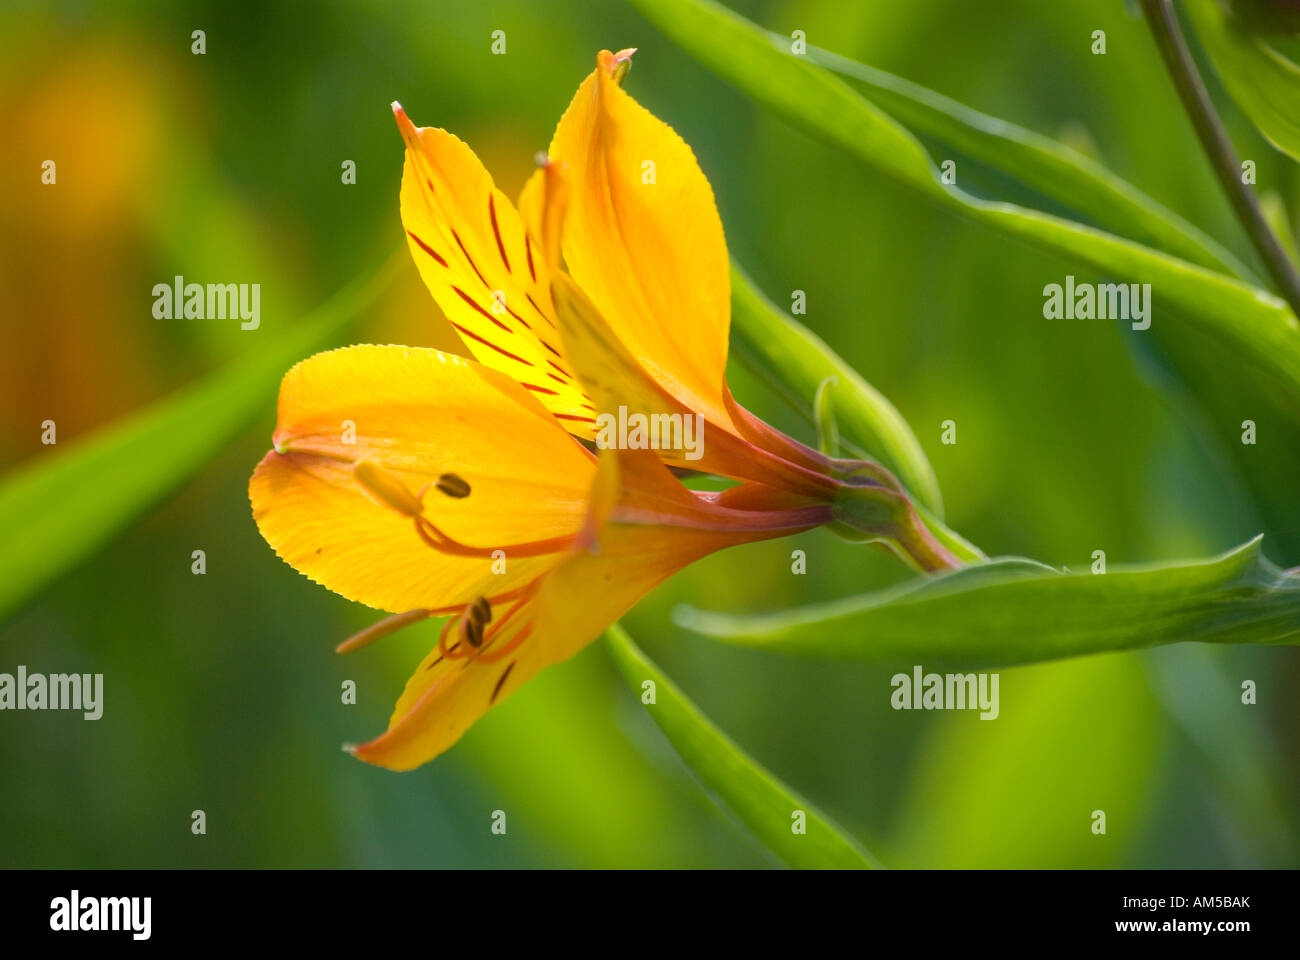 Alstroemeria en fleurs, également connu sous le nom de lis péruvien ou lis de l'Incaspétal Banque D'Images